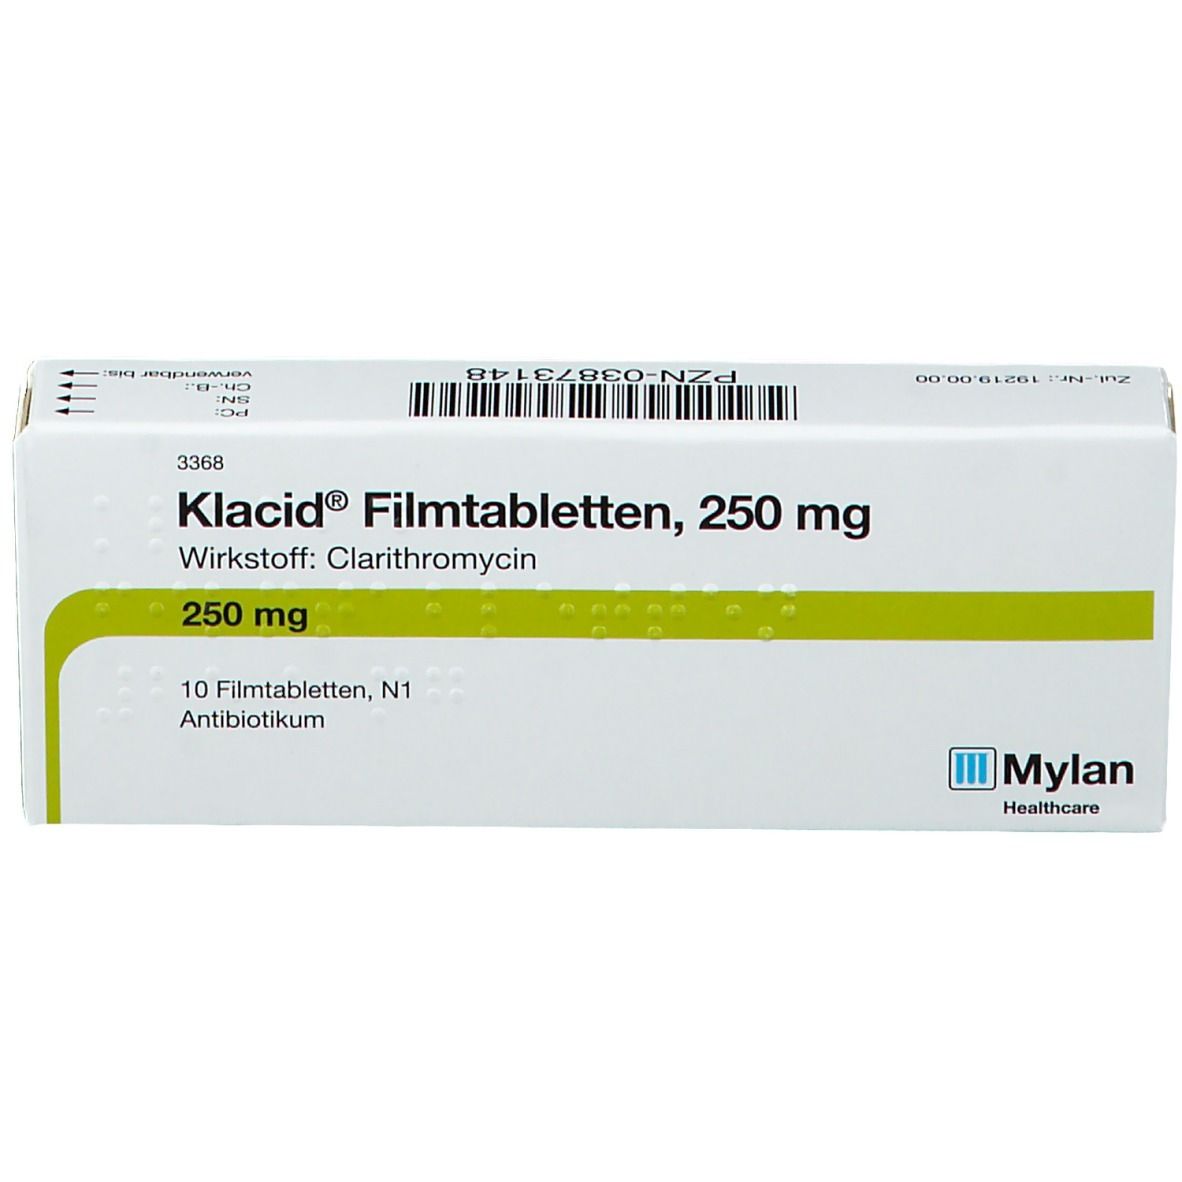 Klacid® Filmtabletten 250 mg